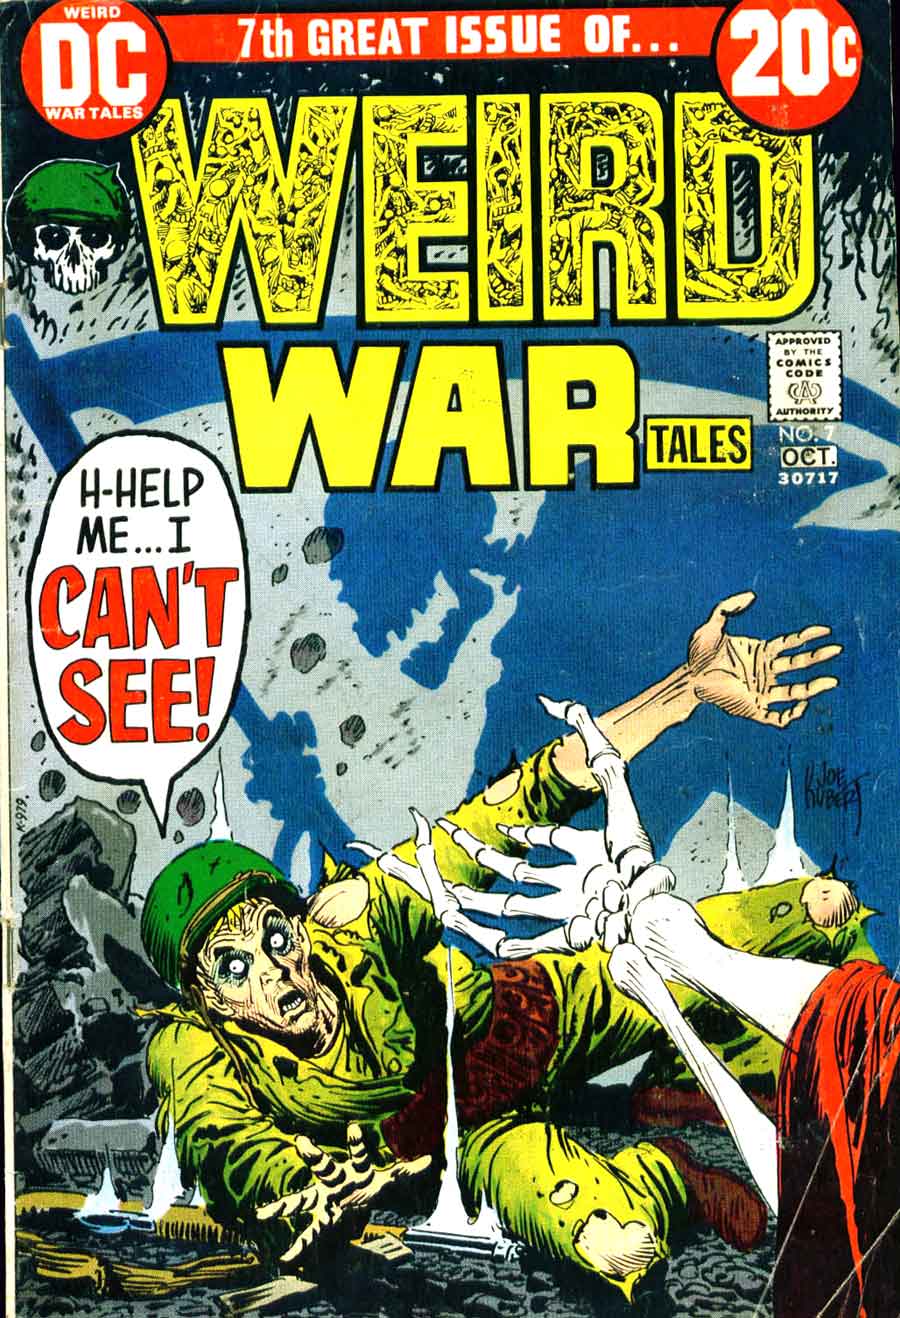 Weird War Tales v1 #7 dc bronze age comic book cover art by Joe Kubert